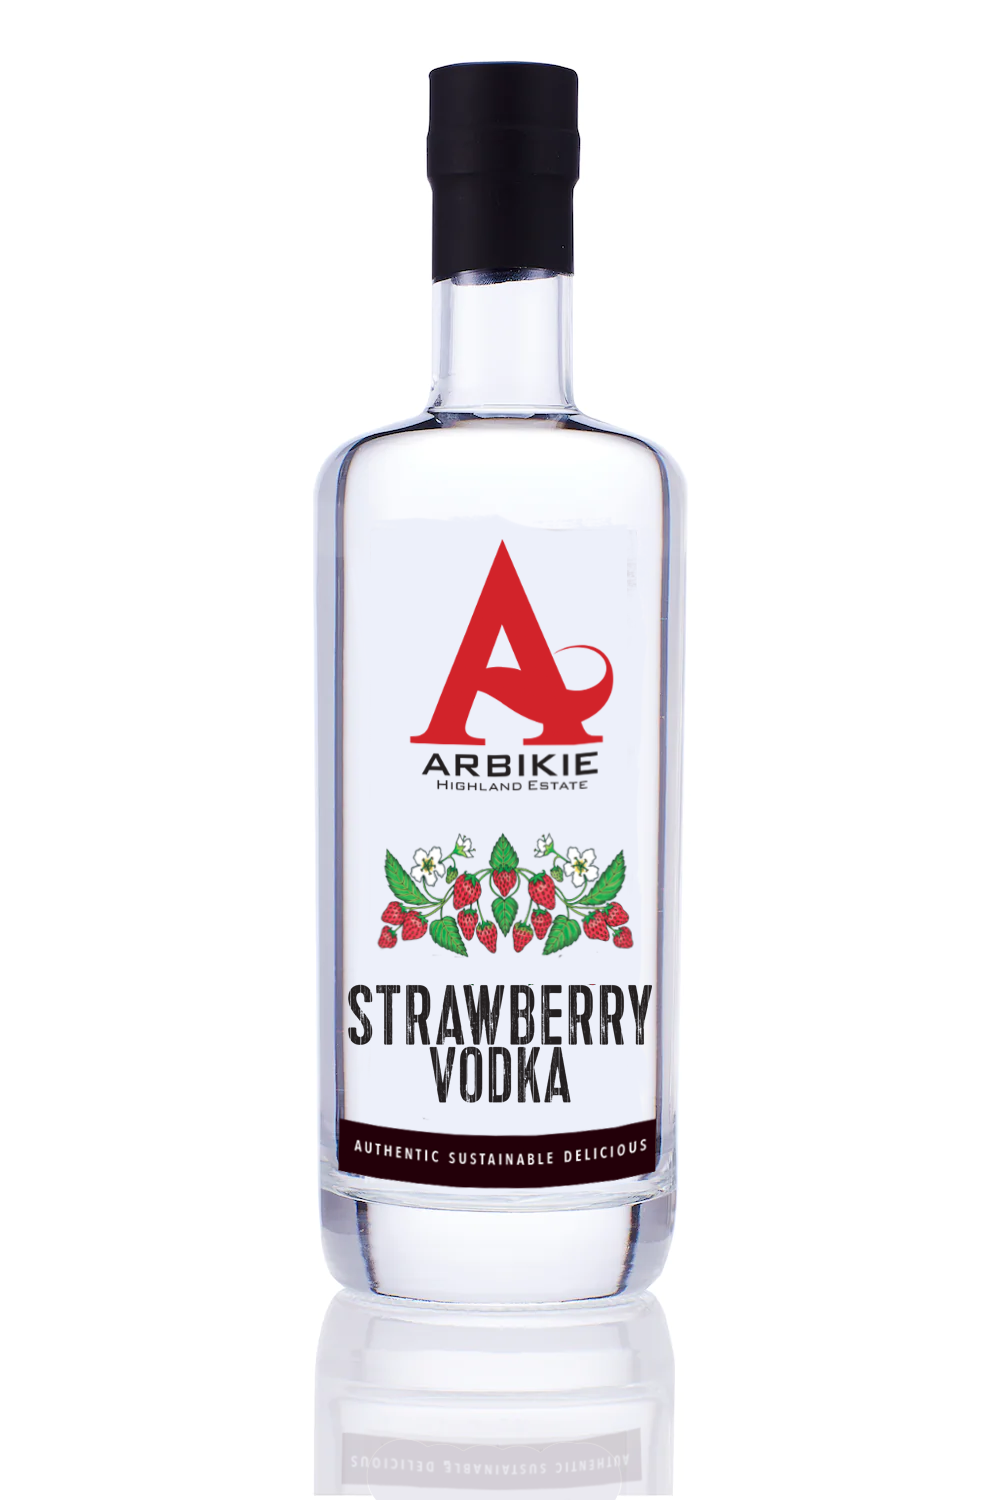 Arbikie Strawberry Vodka 50.0% 0.7L, Spirits